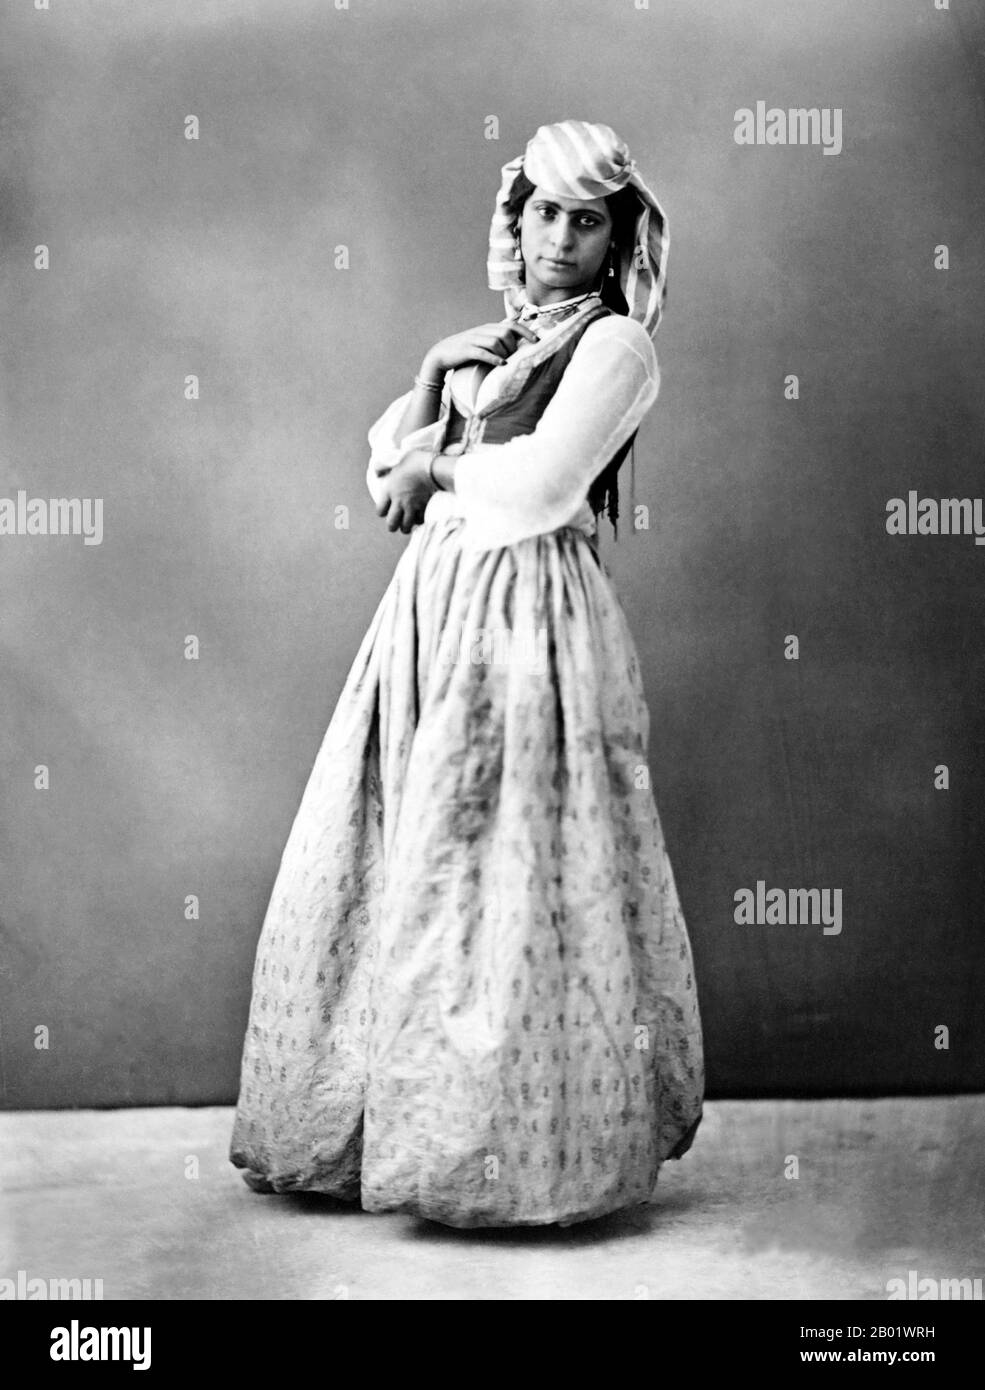 Égypte : une fille dansante ou almeh, le Caire, v. 1900. 'Almeh' ou 'Alma' est un terme appliqué en arabe égyptien aux artistes féminins ou aux danseuses, parfois aussi en deuil professionnel. Banque D'Images